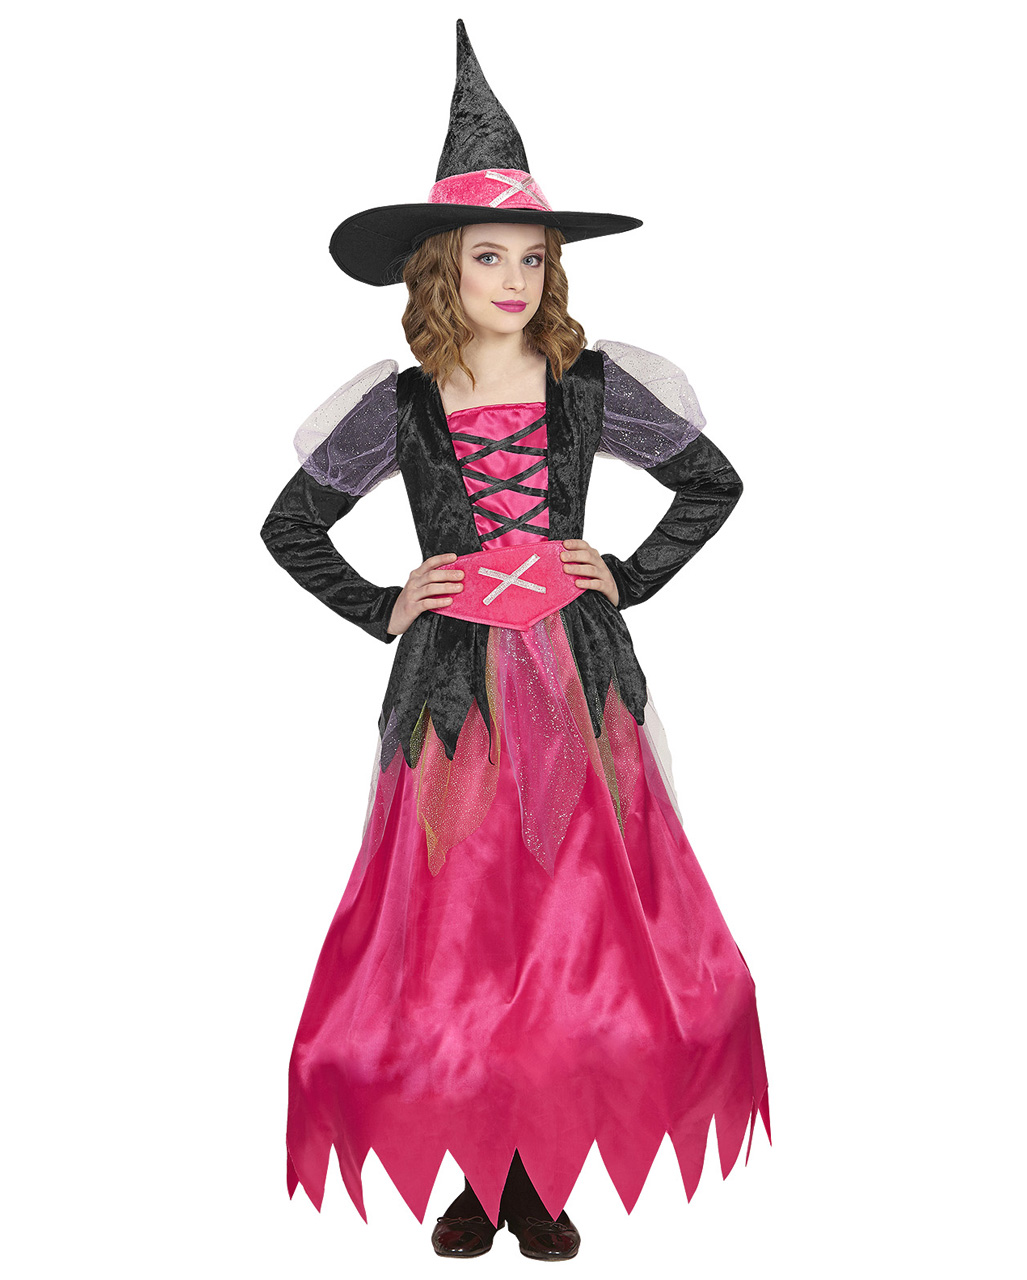 Kleid mit Hexen Hut pink/schwarz Kinder Kostüm Halloween Magier Mädchen HEXE 